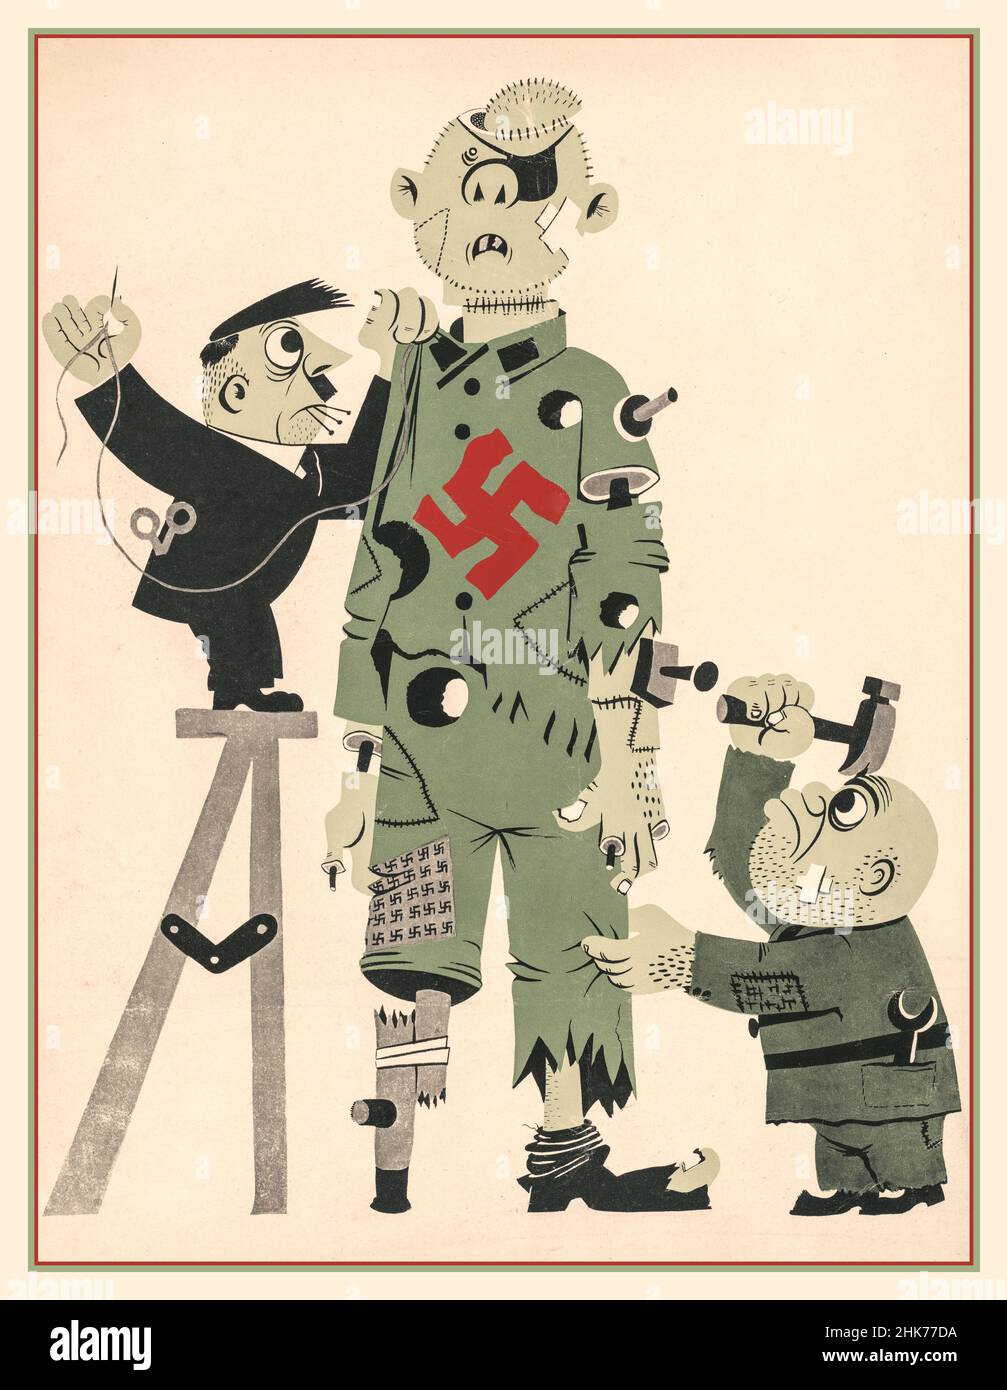 Propaganda la seconda guerra mondiale Adolf Hitler e Mussolini caricatura cartoni animati fare un Poster marionetta mostra un cartone animato di Hitler e Mussolini che si accatastano insieme un marionetta rotto che rappresenta l'asse; il marionetta ha una grande swastika rossa sul suo petto. Foto Stock